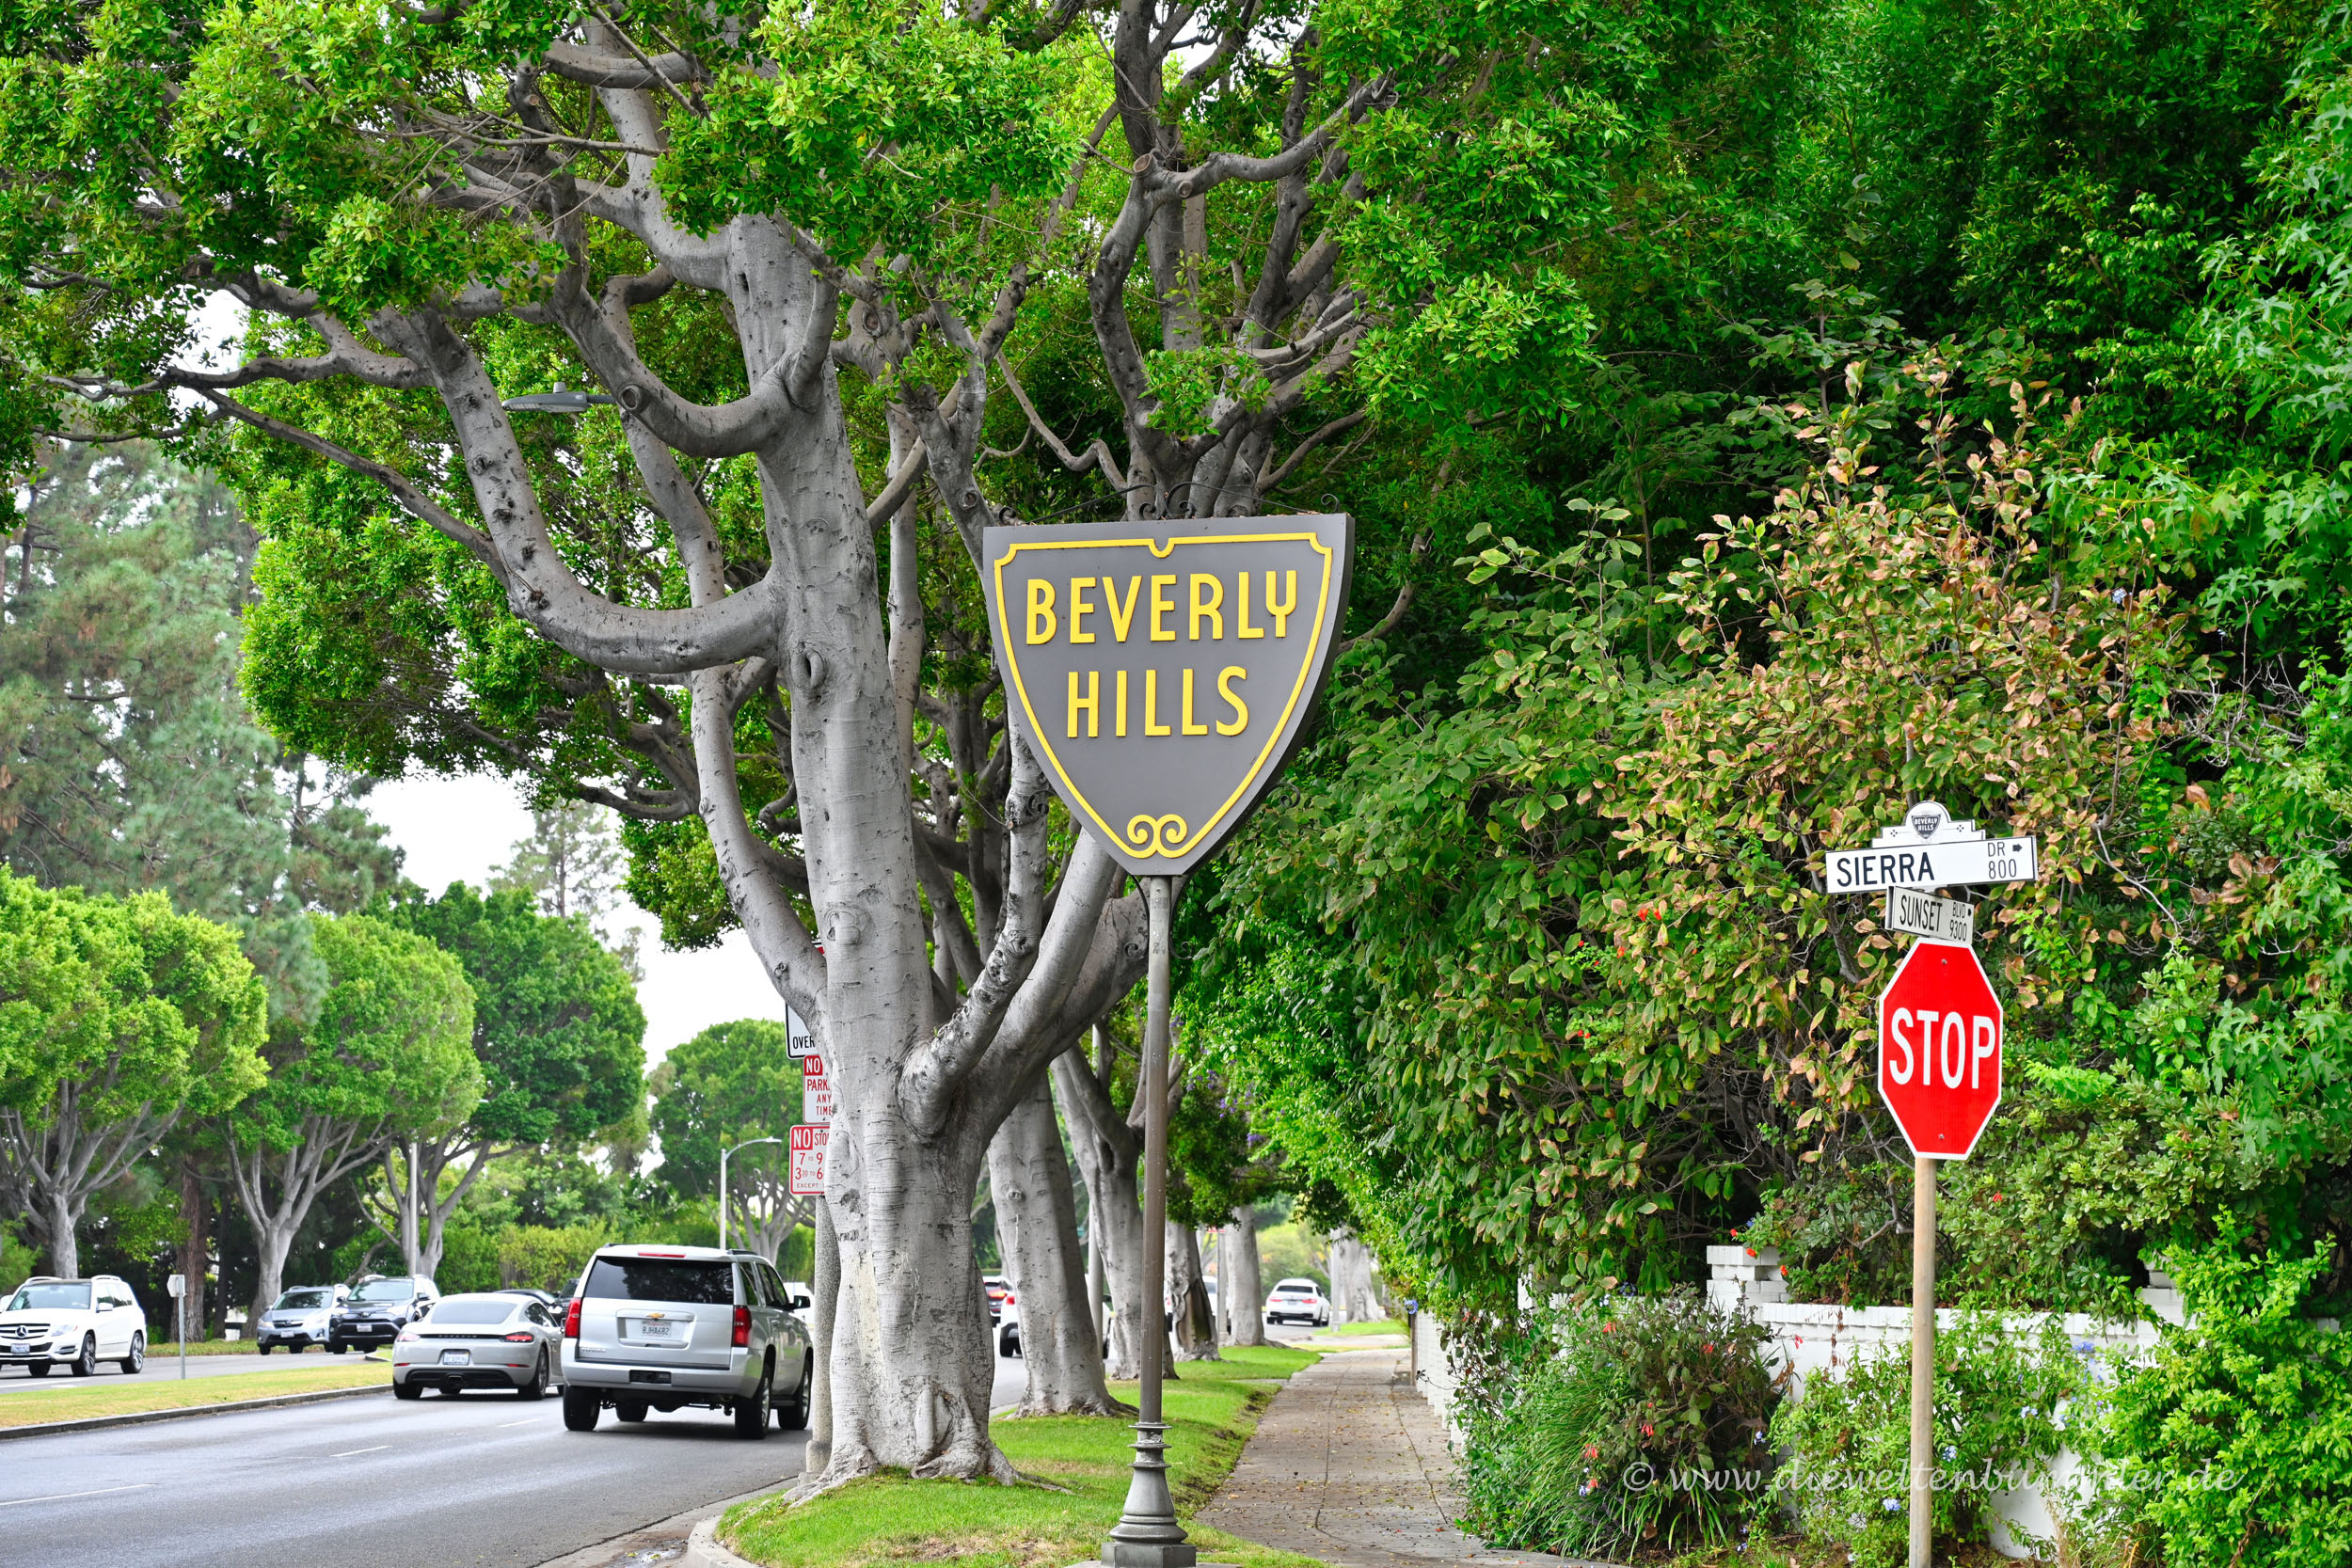 Beverly Hills, Kurzbesuch in Beverly Hills, Rodeo Drive, Weltenbummler, 2500x1670 HD Desktop